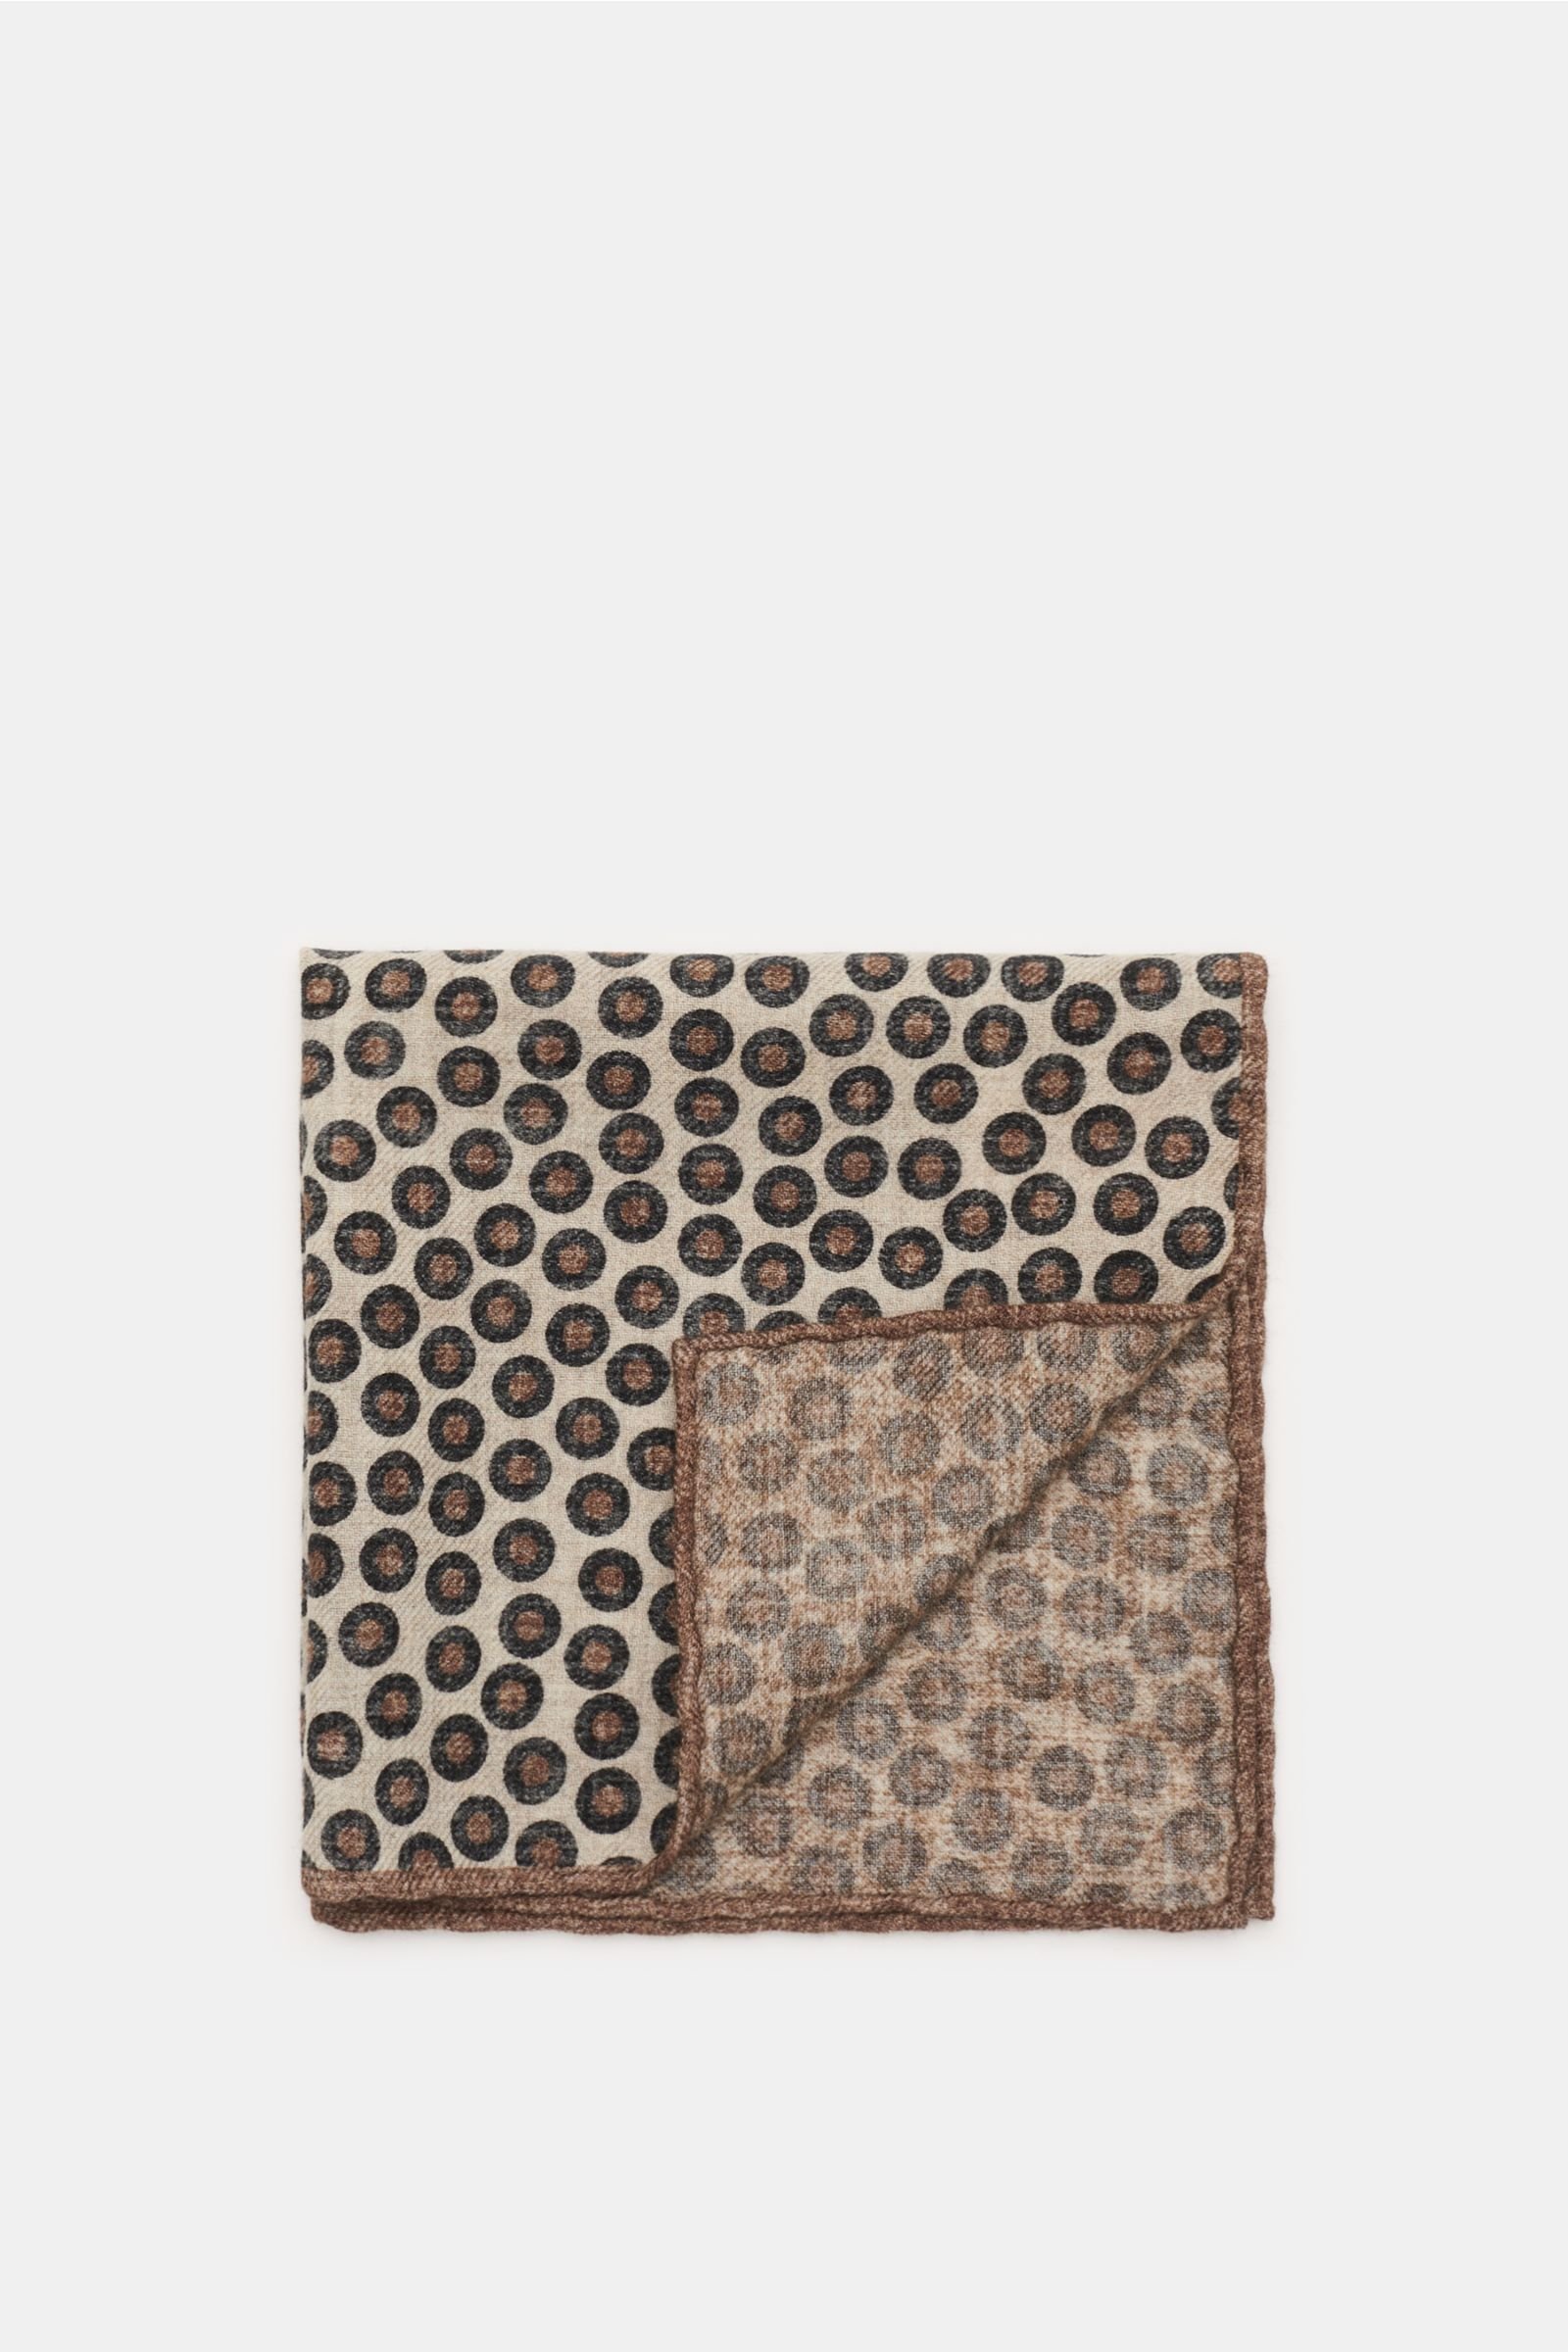 Pocket square beige/grey-brown patterned